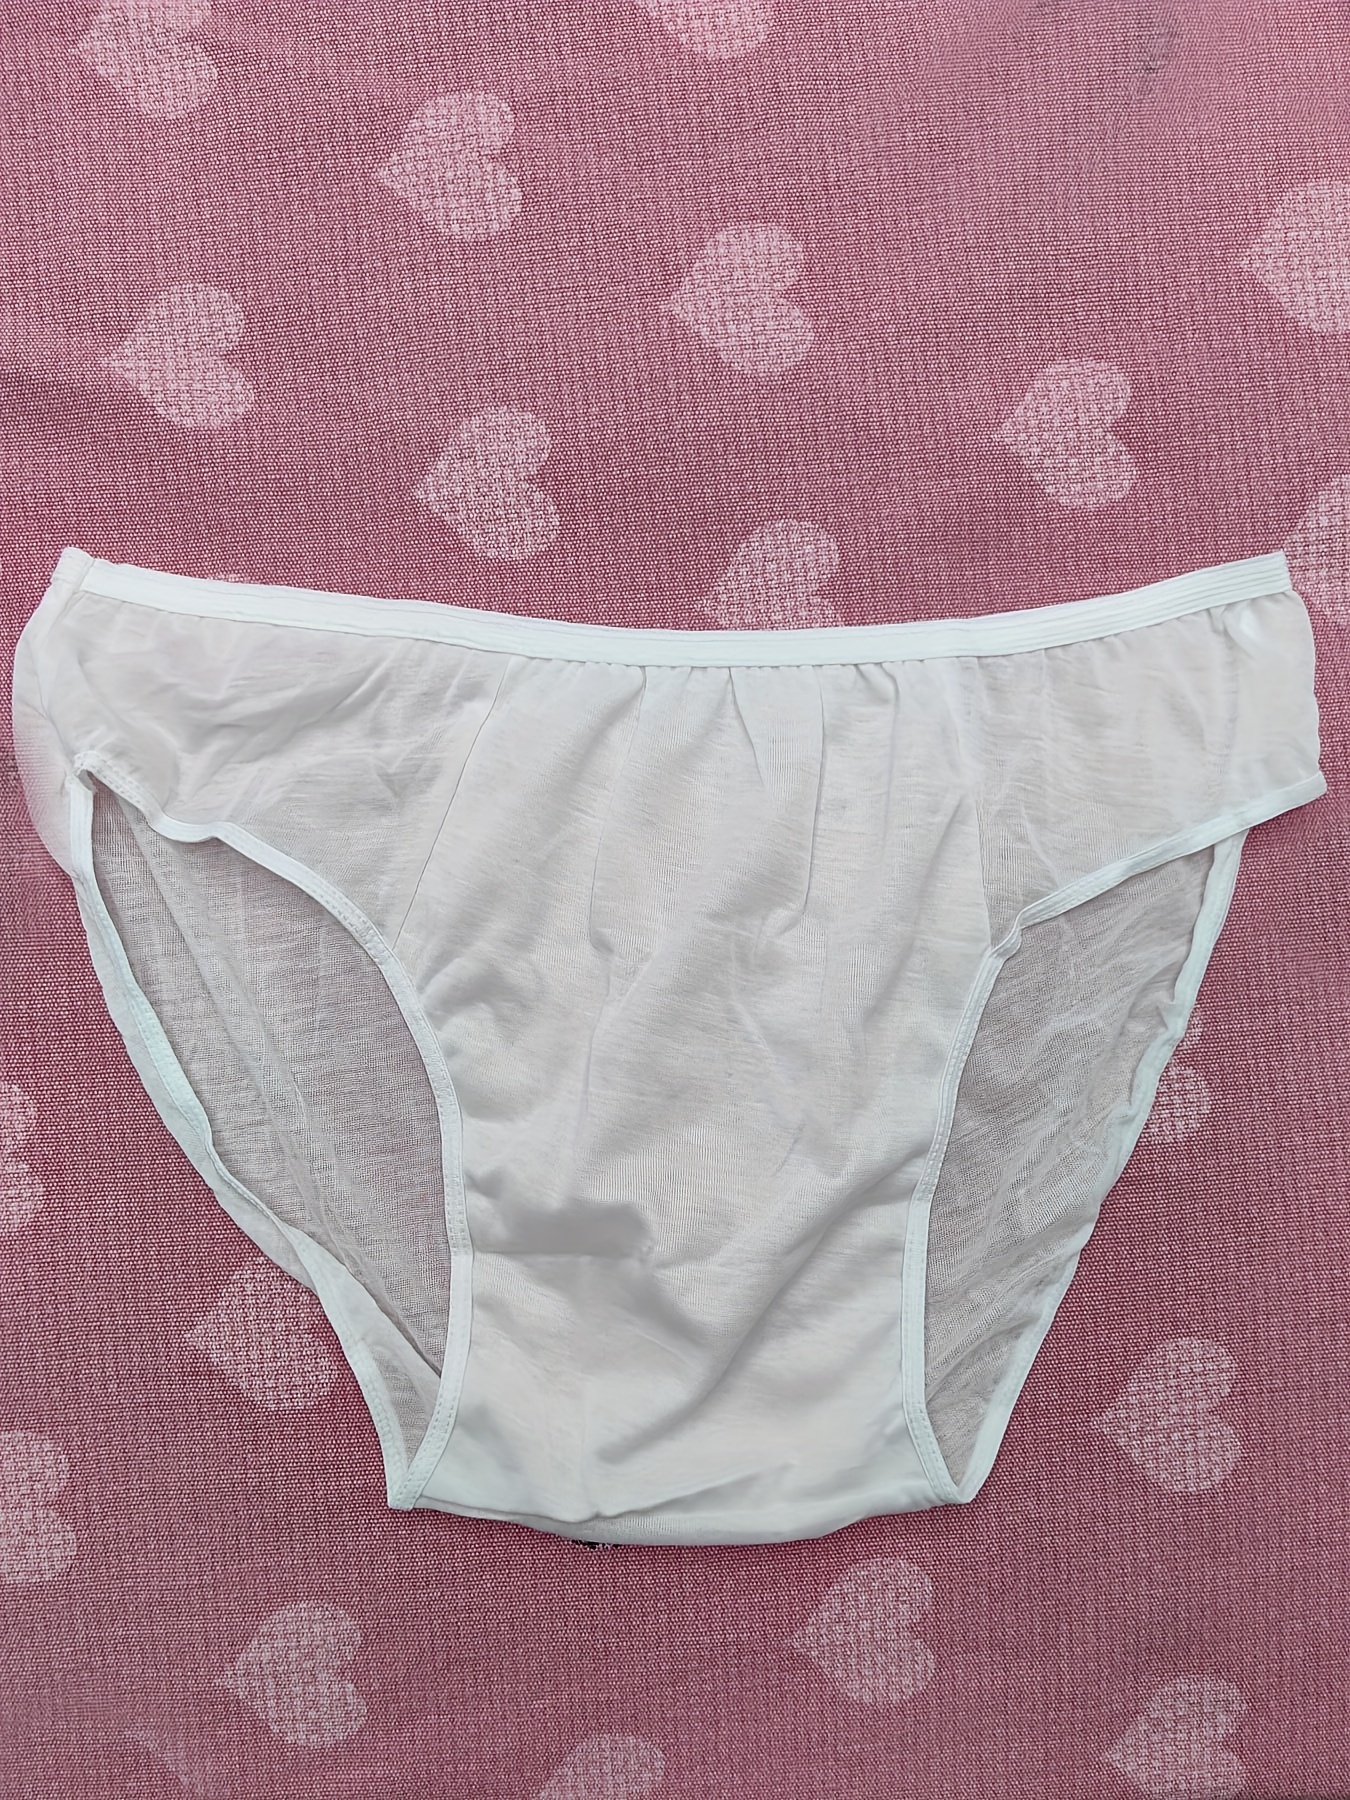 5pcs Disposable Underwear, Cotton Panties For Men Women, Bath Hotel  Pregnancy Travel Briefs